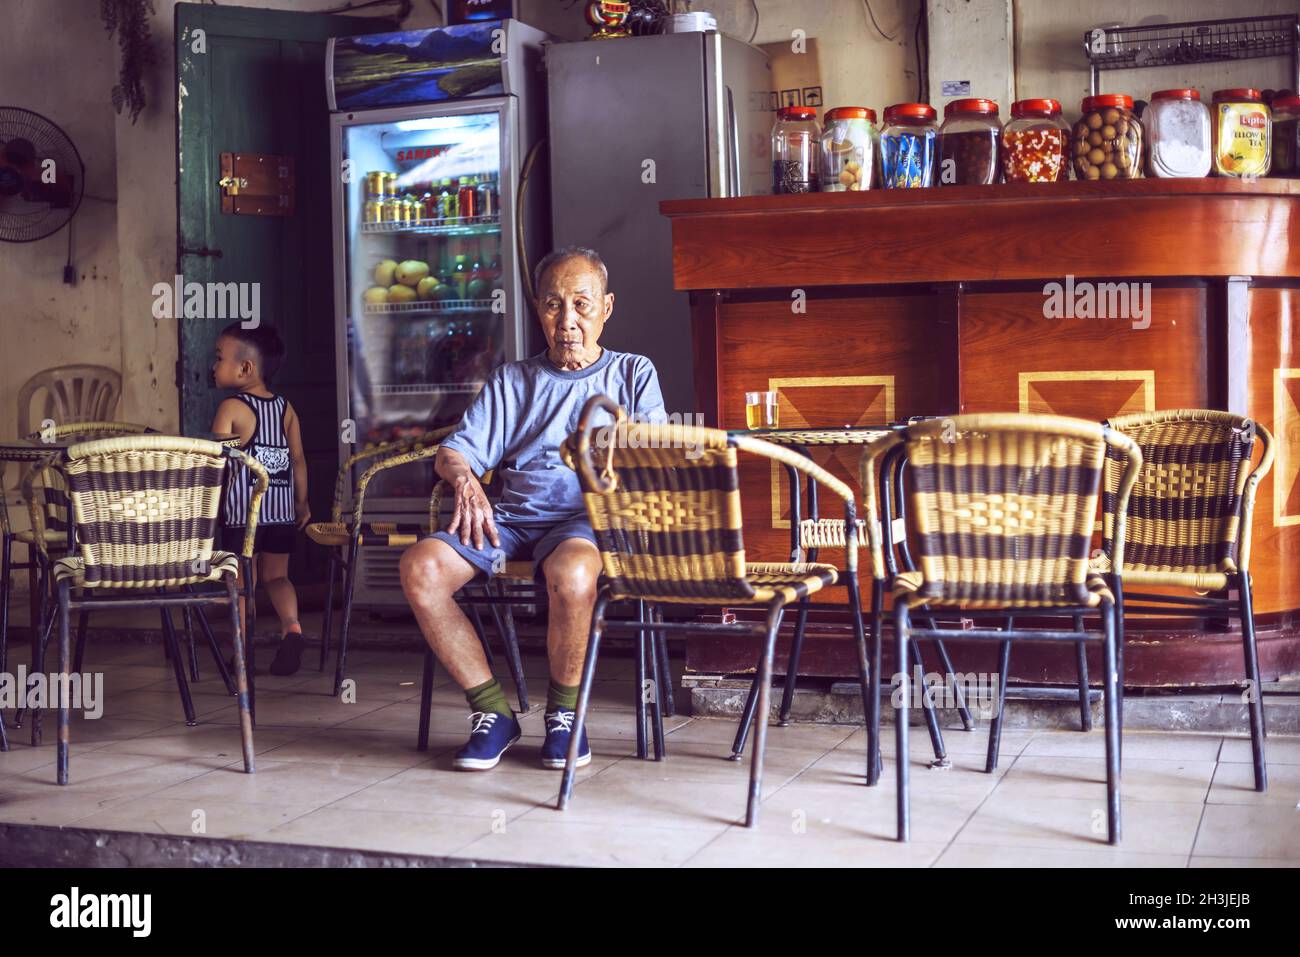 HANOI - 19. JUNI 2015: Unbekannte vietnamesische Elderley-Männer und ein kleines Kind in einer Straßenbar, am 19. Juni 2015 in Hanoi, Vietnam Stockfoto